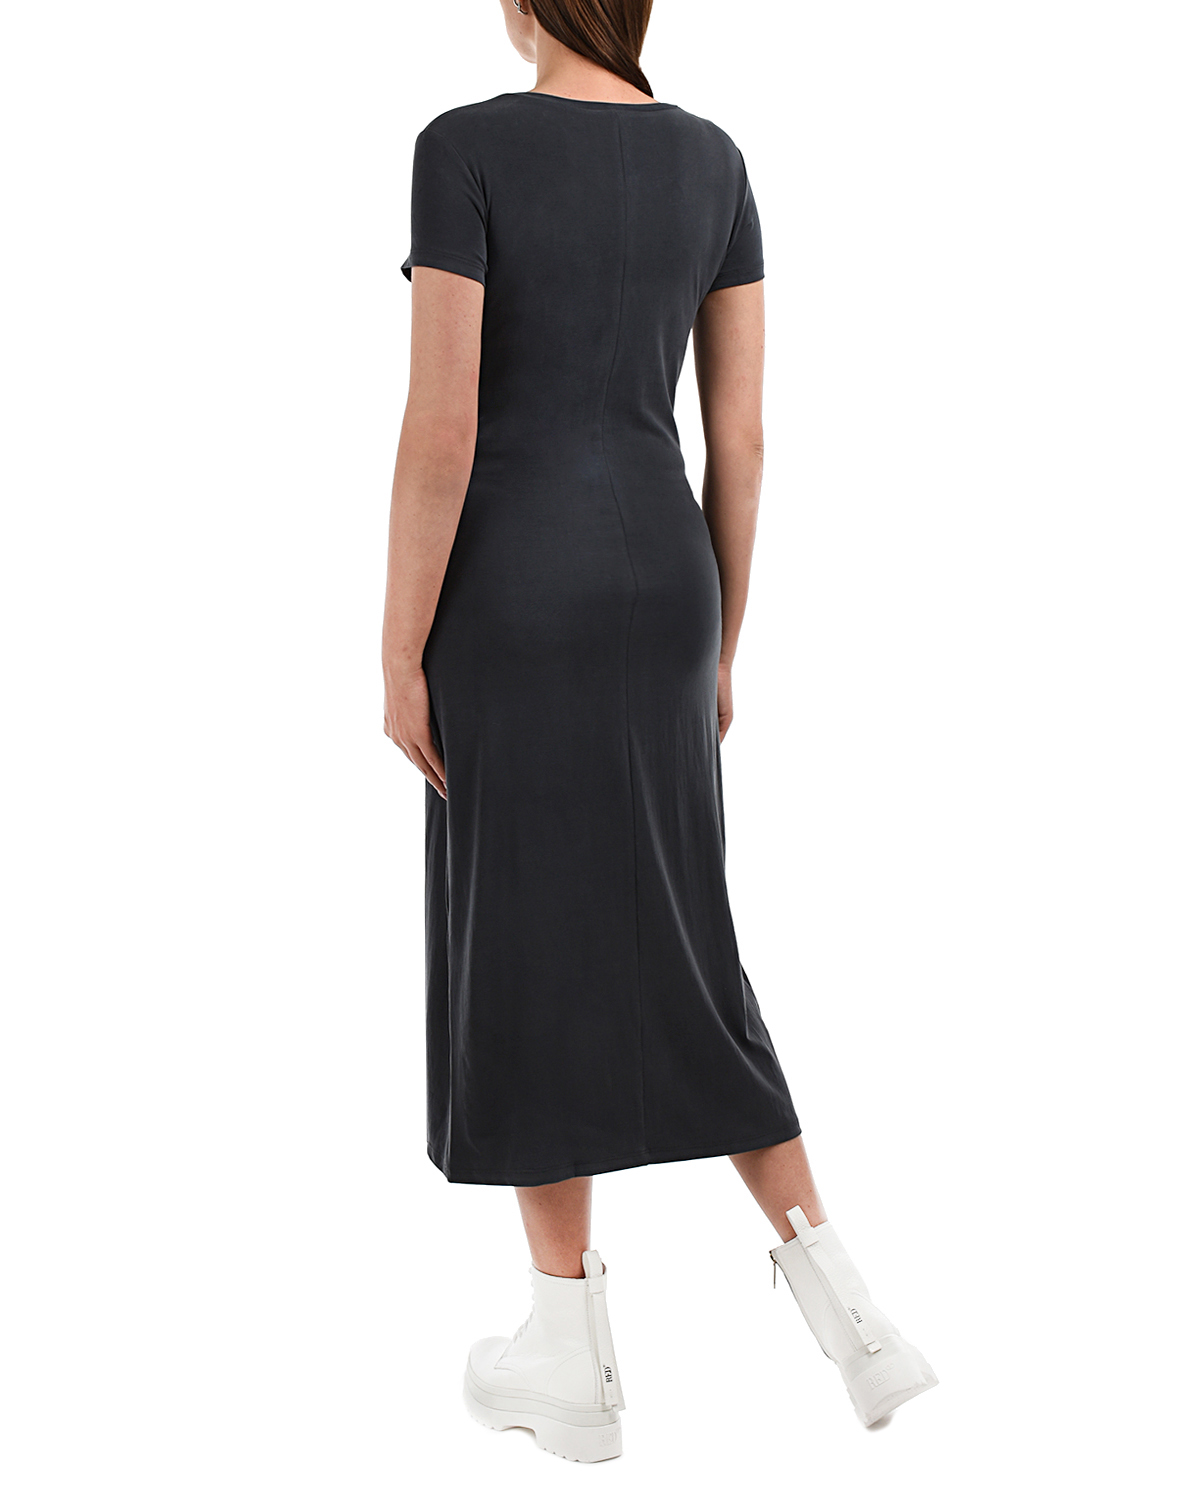 Темно-серое платье с короткими рукавами Attesa, размер 38, цвет серый - фото 3